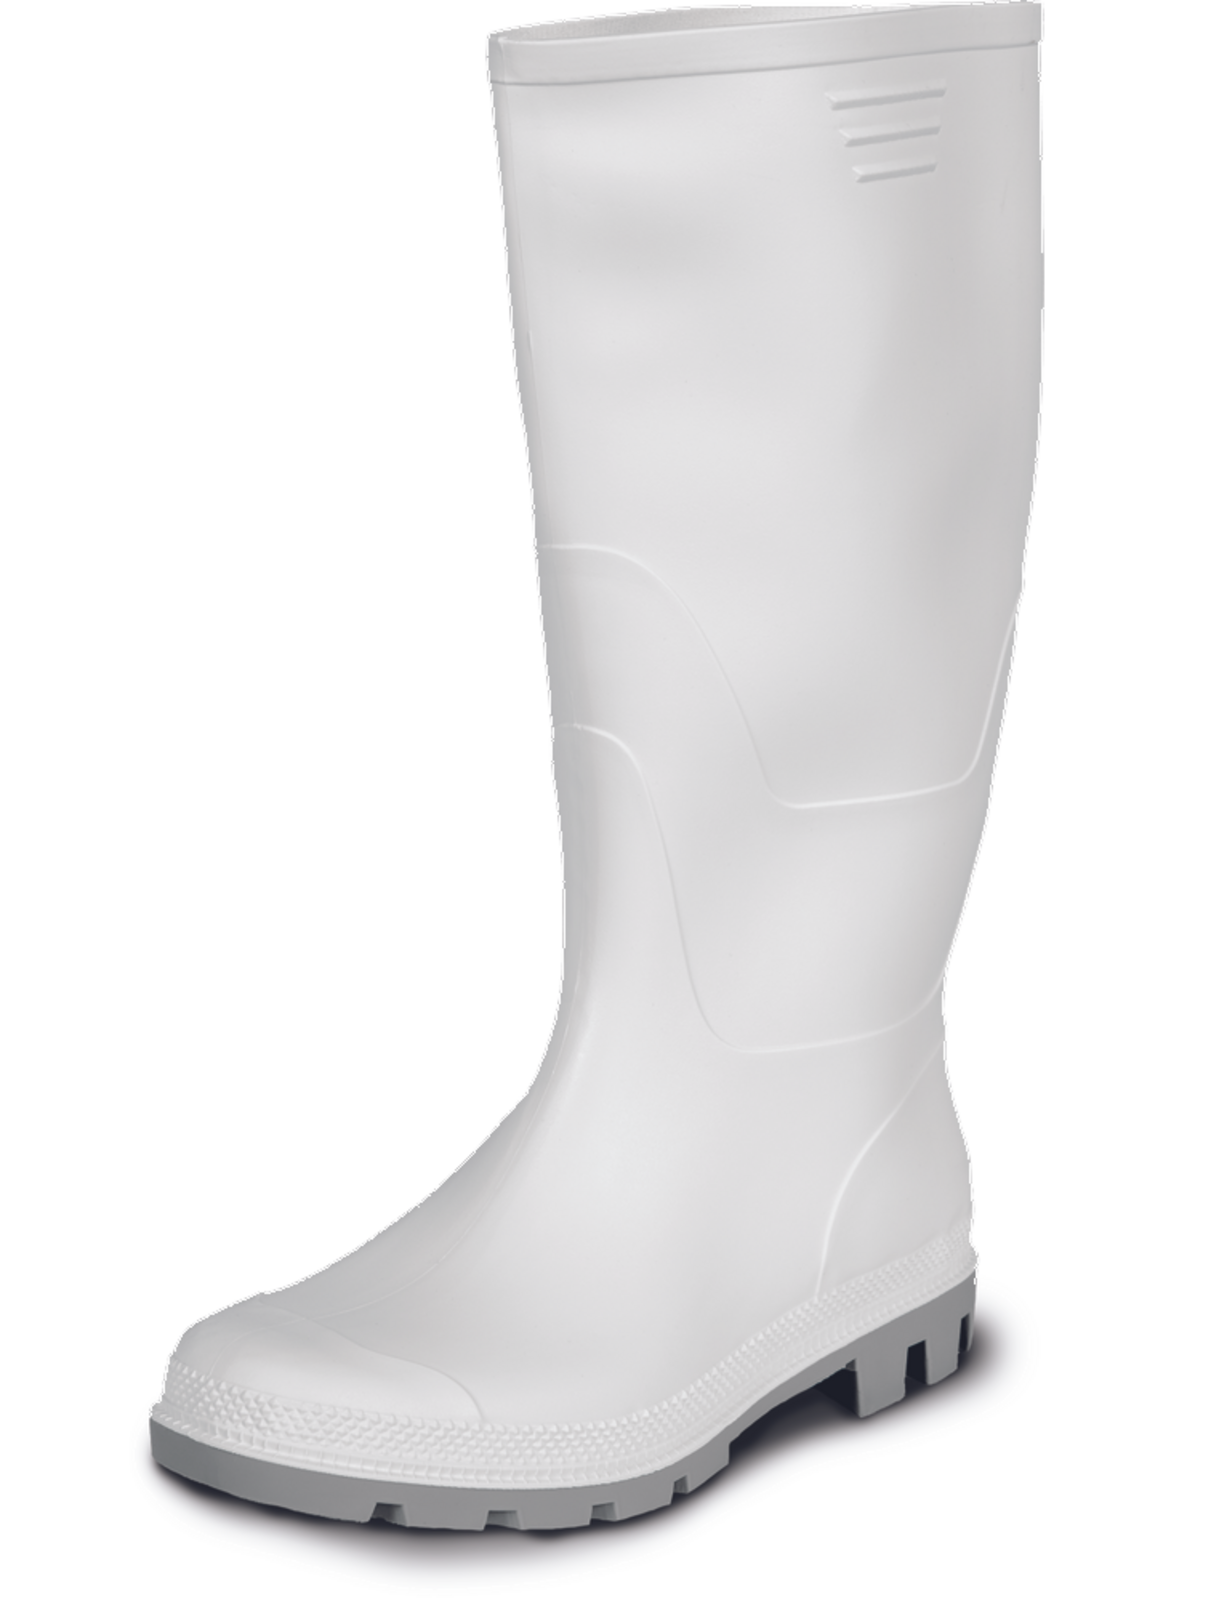 Gumáky Boots Ginocchio PVC - veľkosť: 41, farba: biela